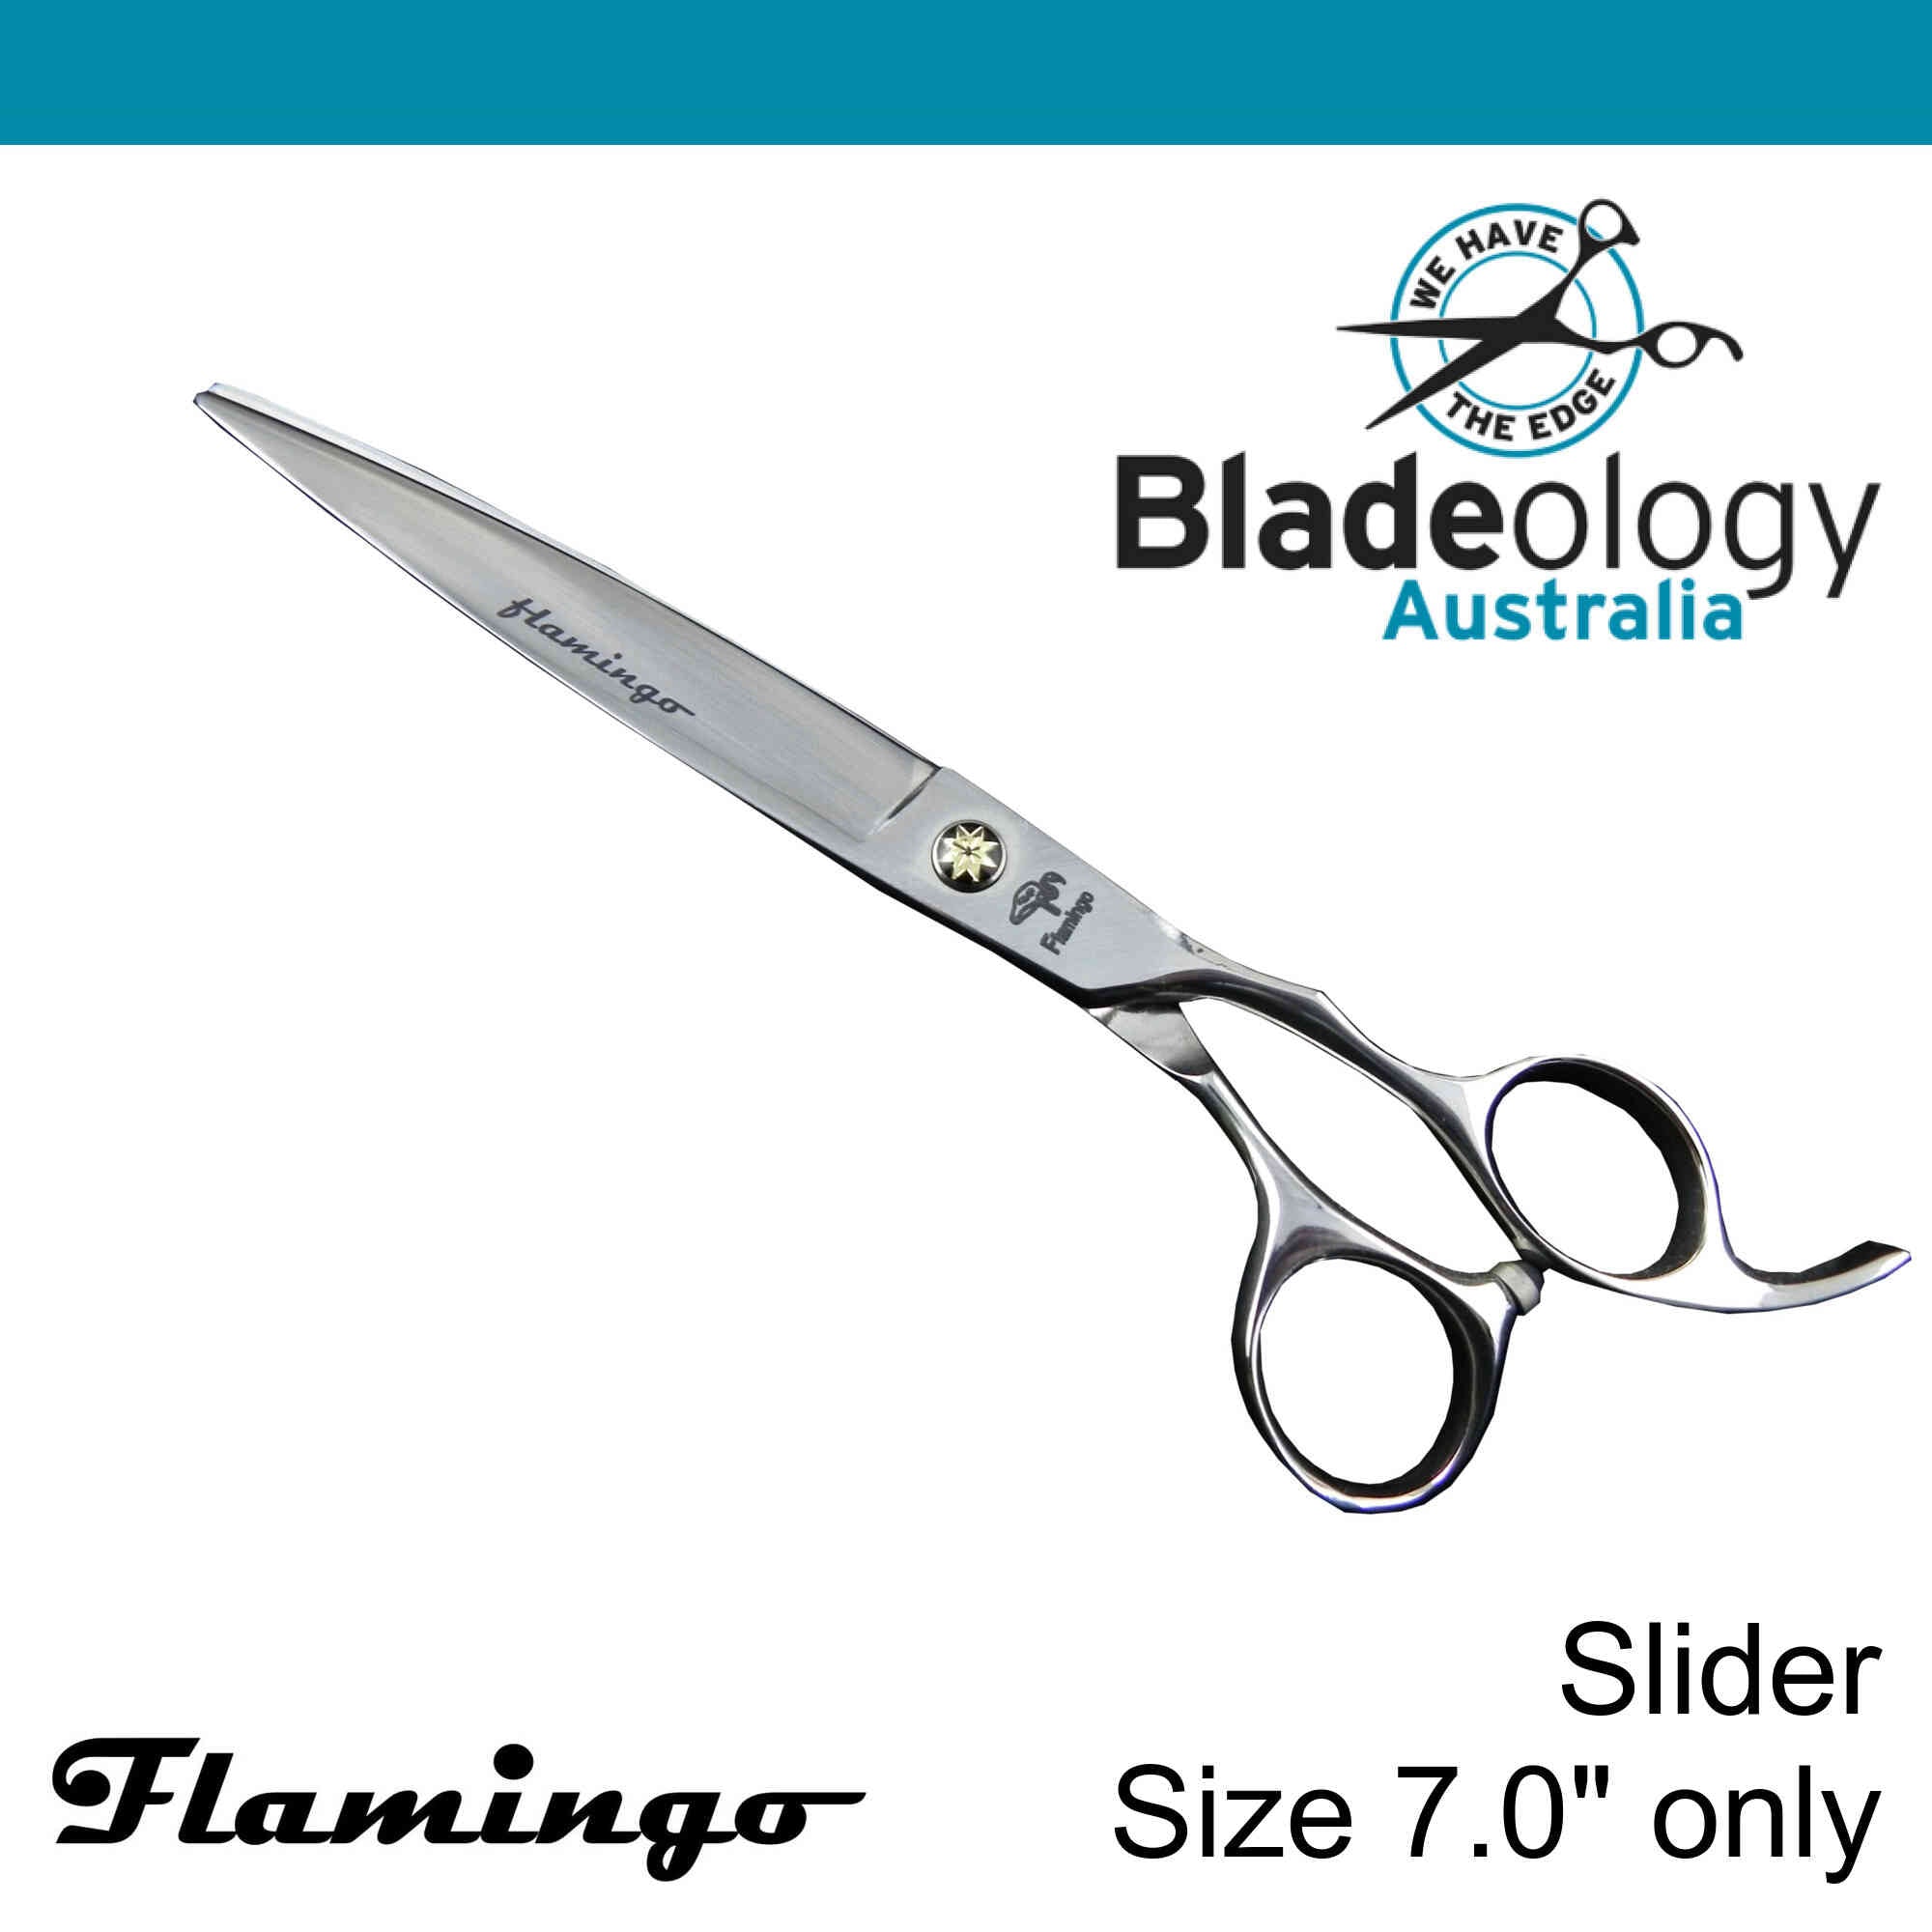 Flamingo Slider Hairdressing Scissors 7.0"